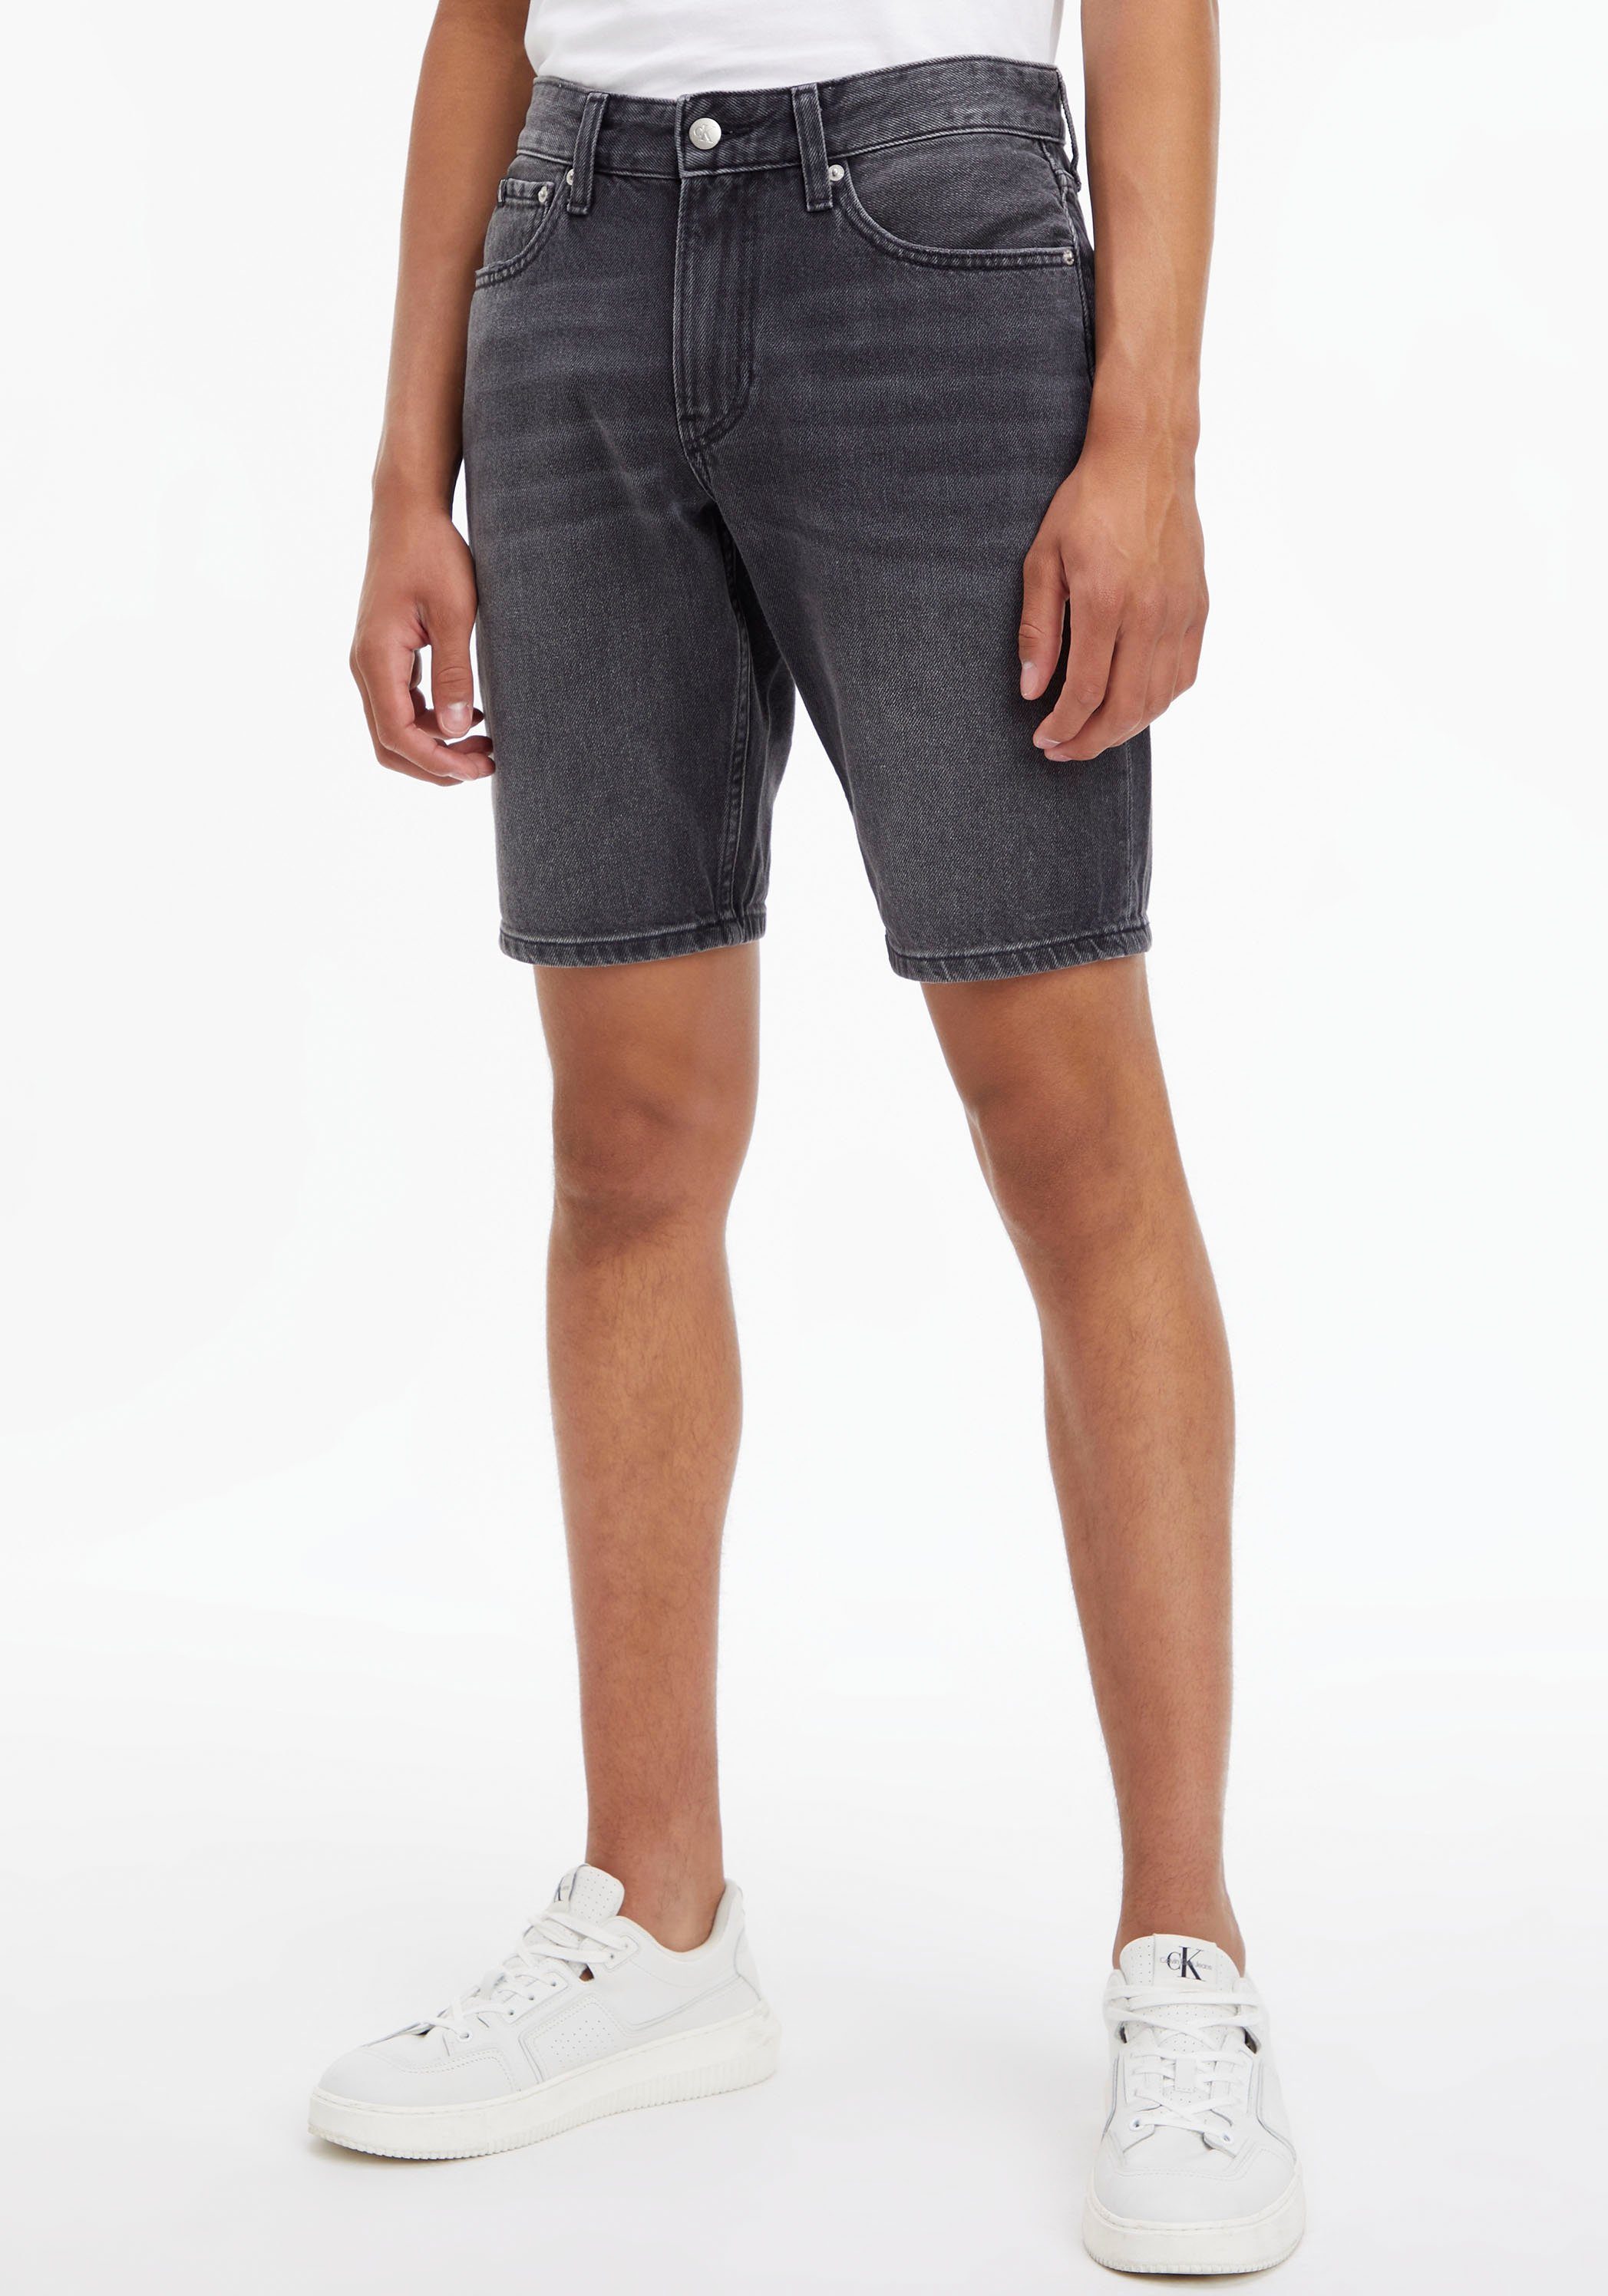 Calvin Klein Jeans Bermudas in 5-Pocket-Form Black Denim